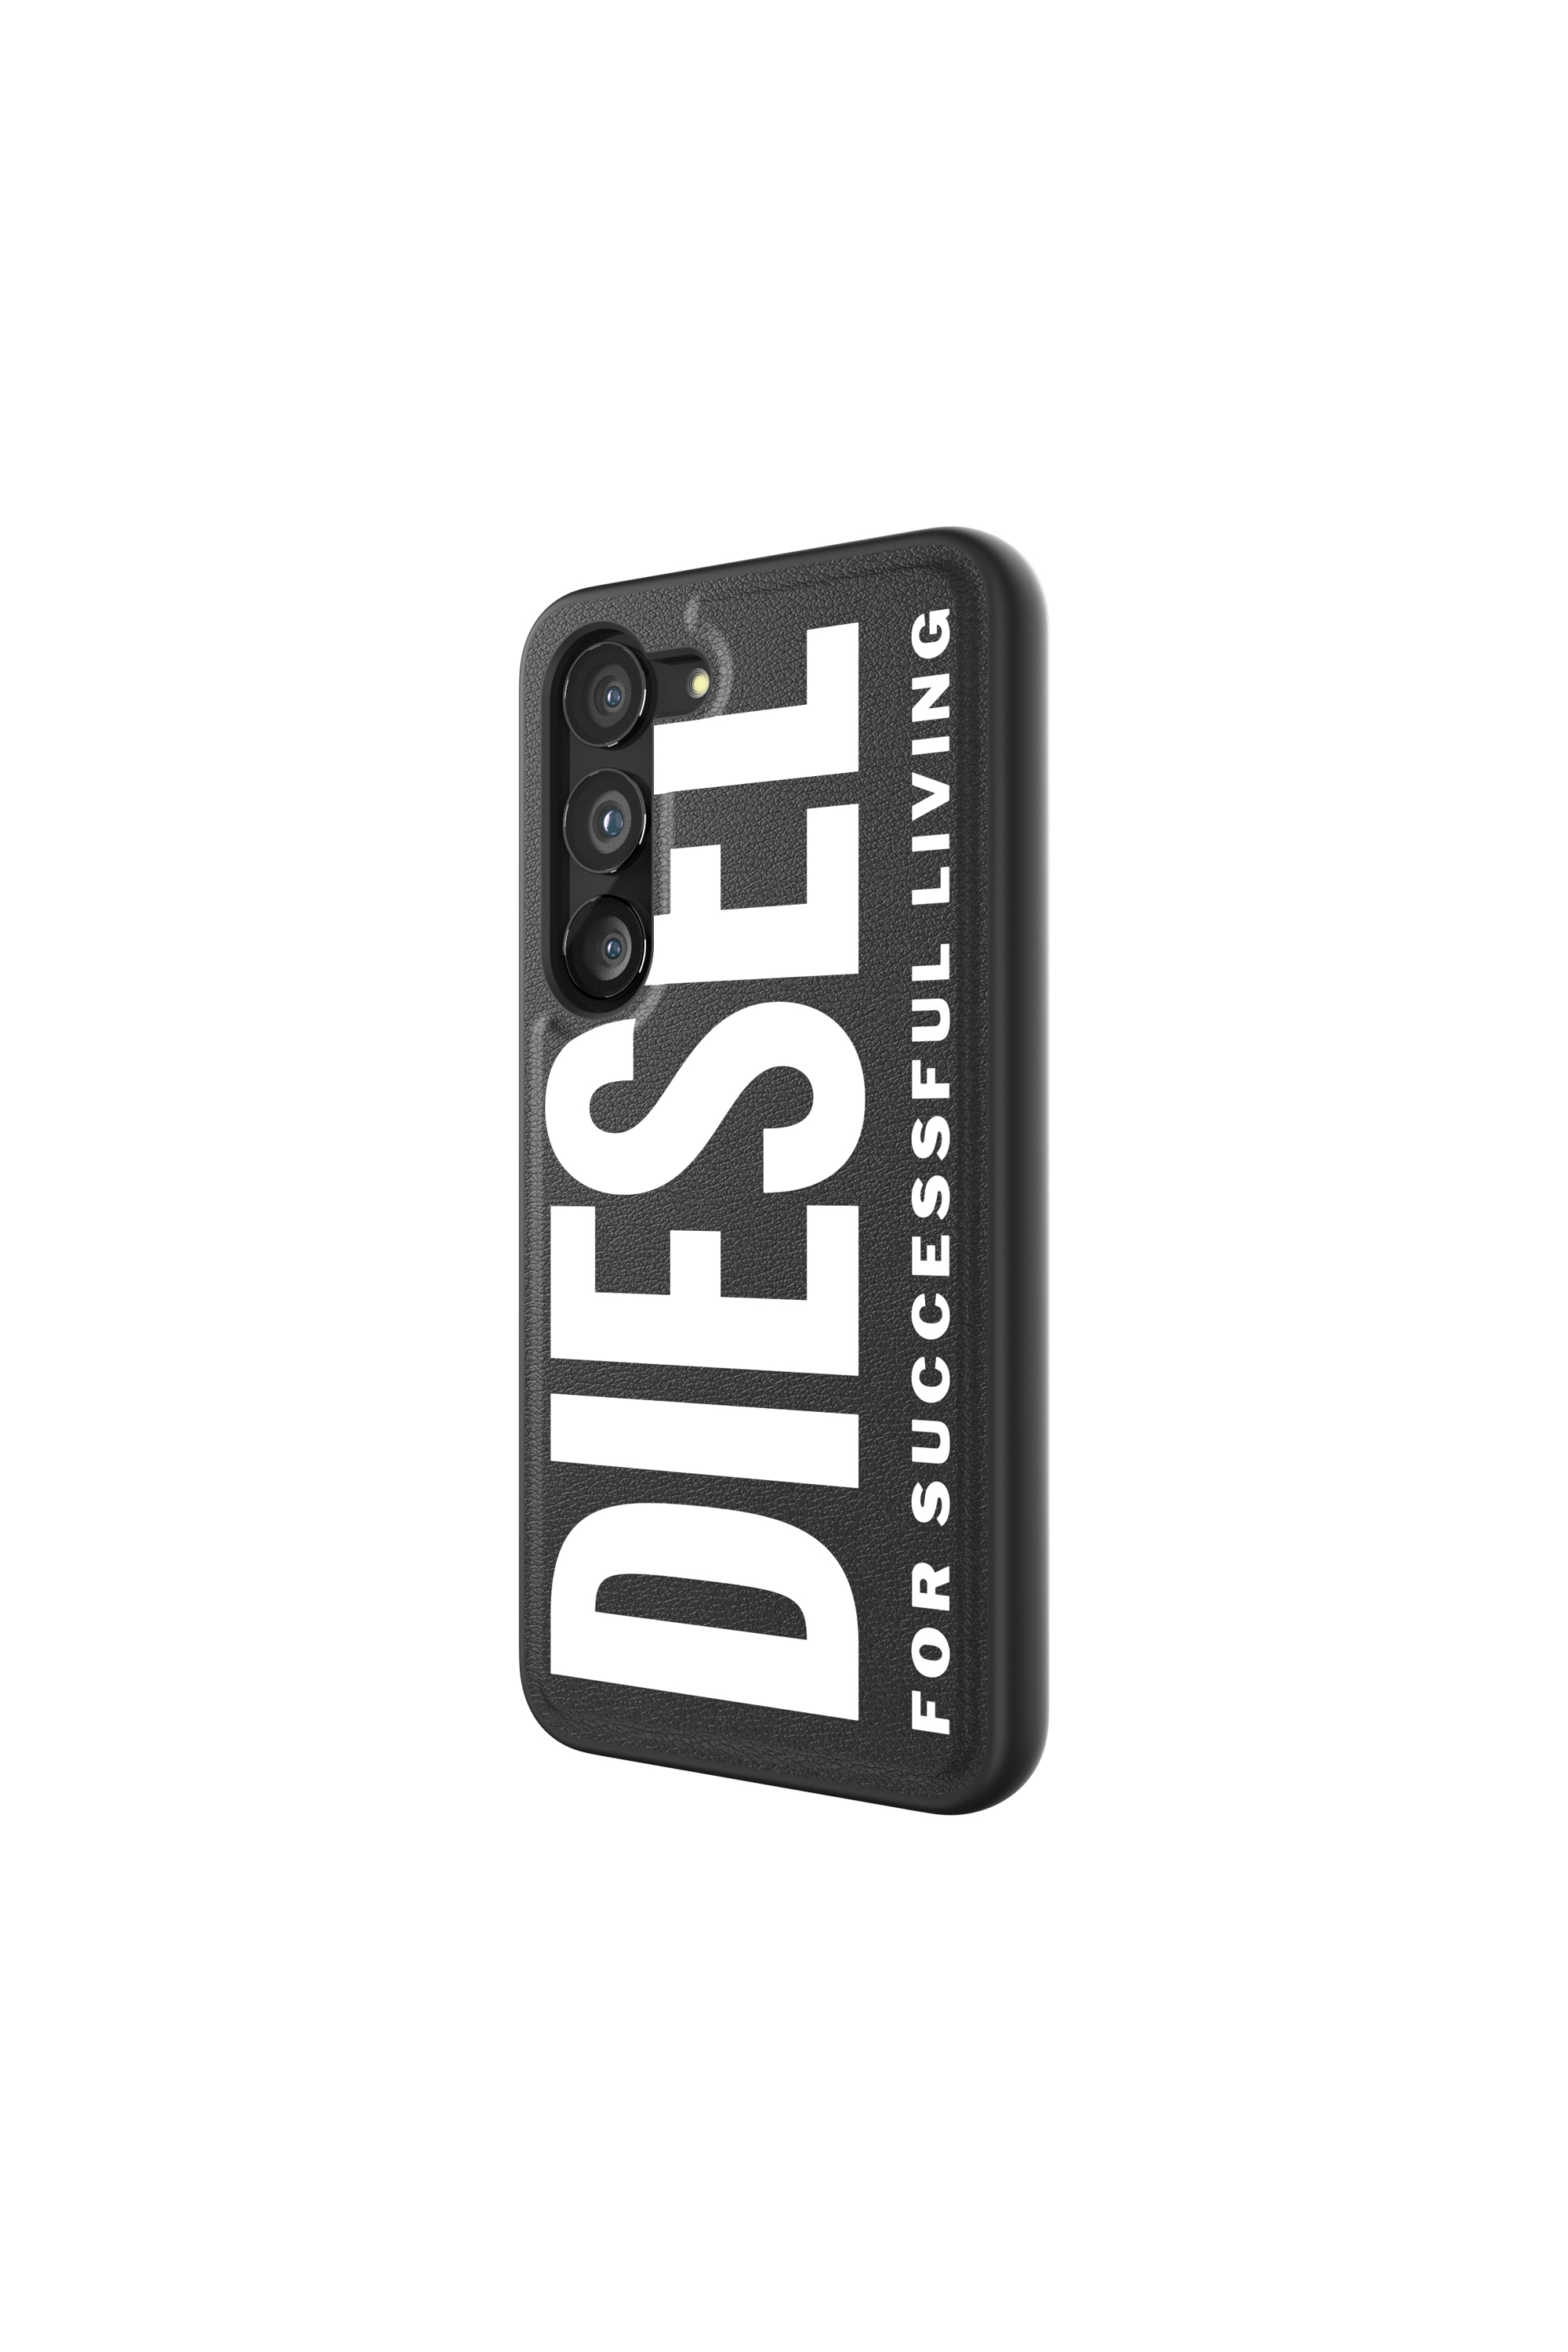 Diesel - 52926 MOULDED CASE, Black/White - Image 4